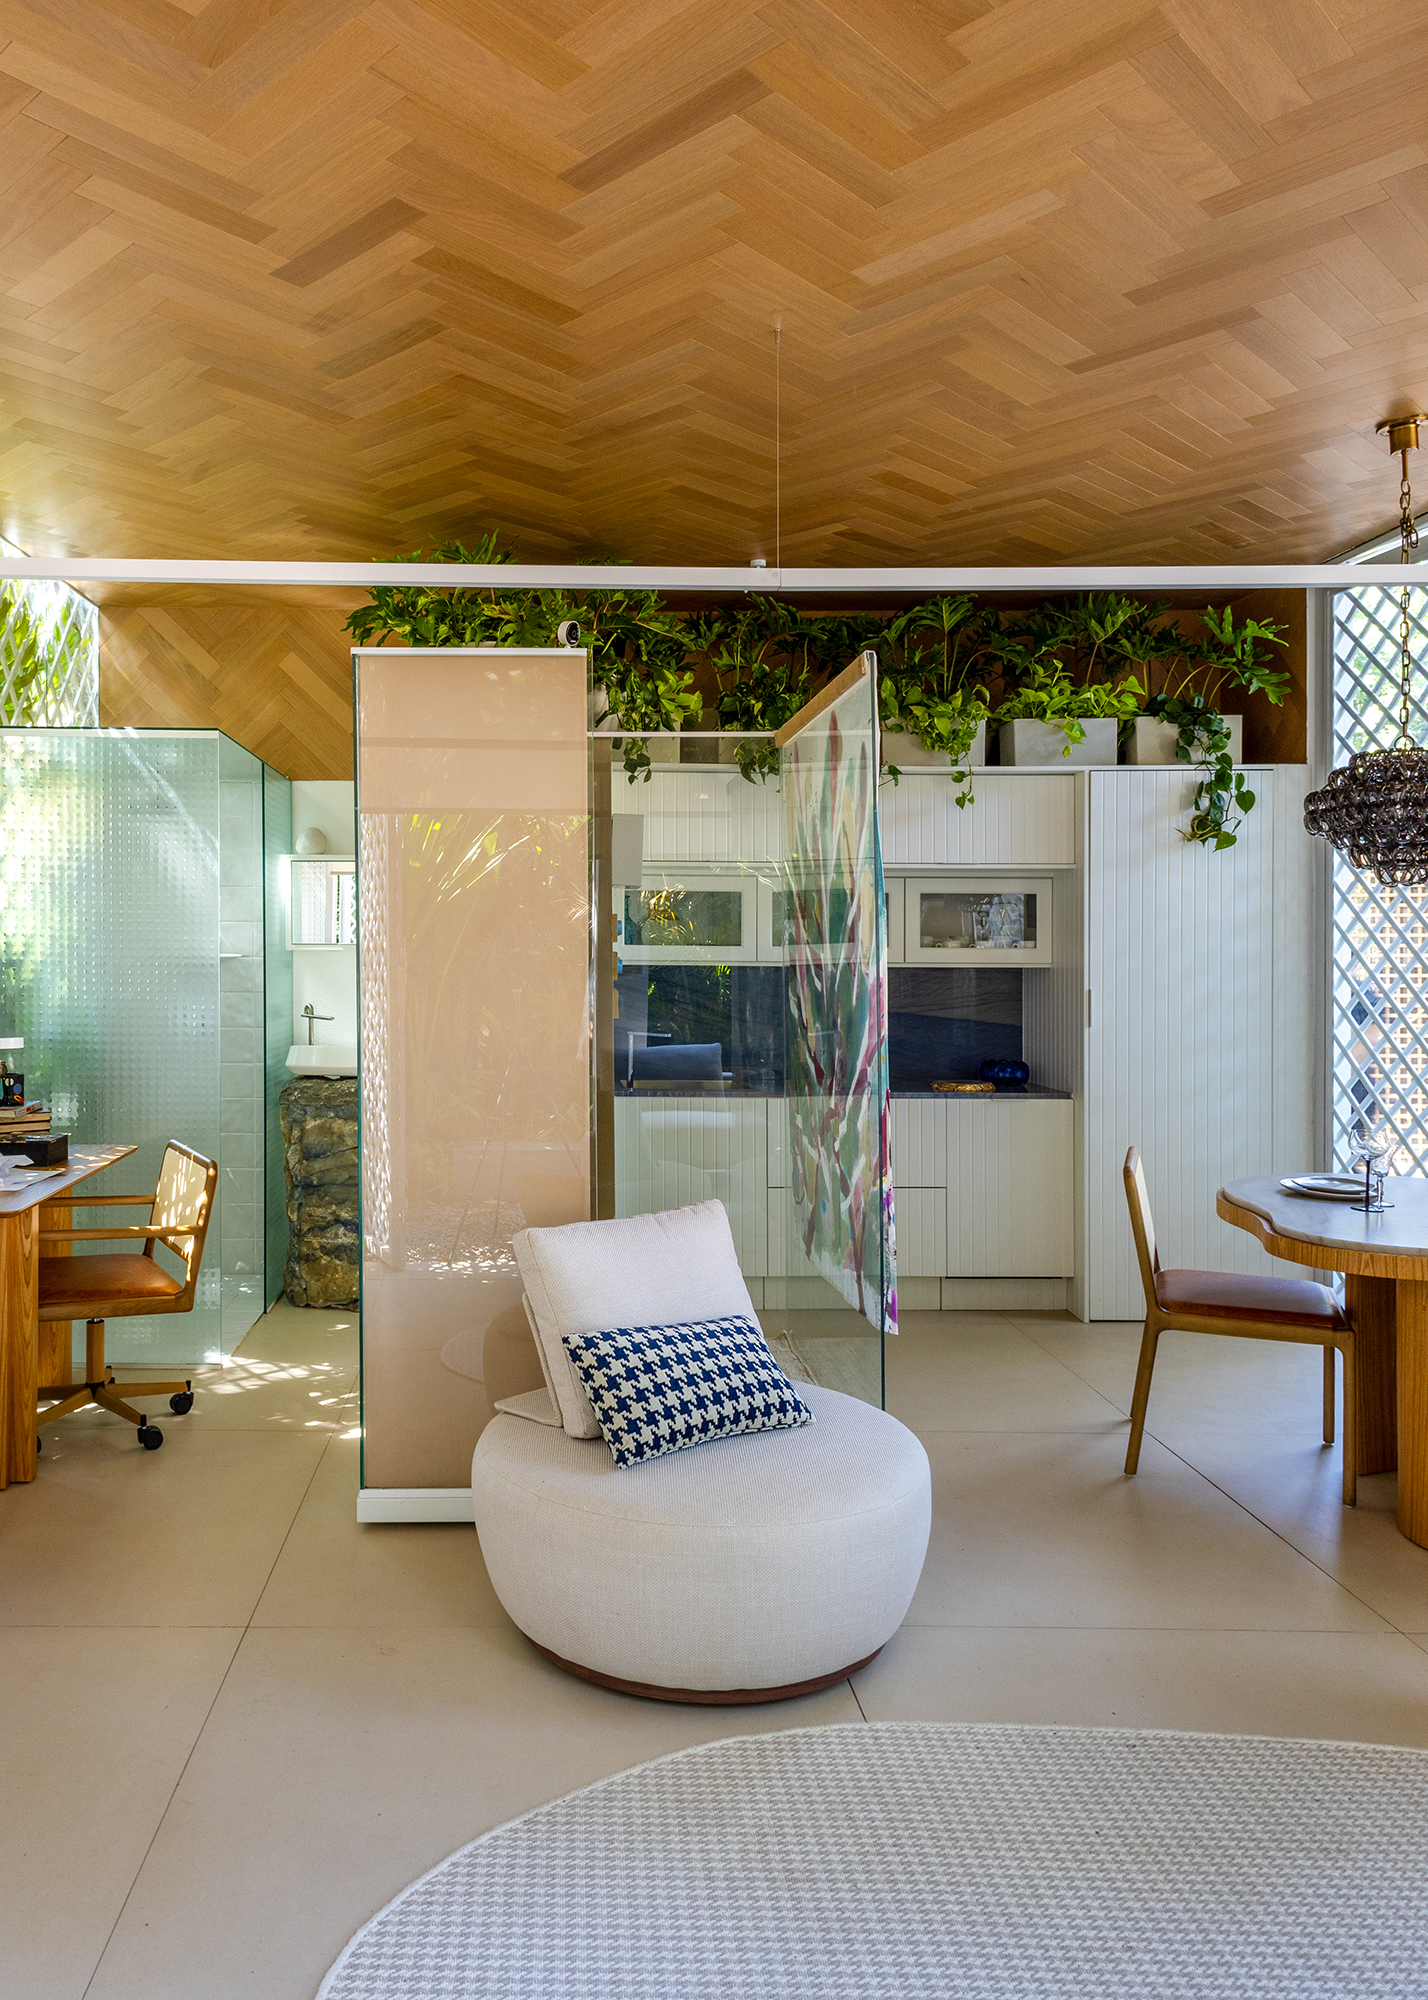 Casa de 30 m² une 100 anos de decoração em um único projeto. Projeto de Victor Niskier para a CASACOR Rio de Janeiro 2023. Na foto, sala com cozinha integrada e vista para o jardim.